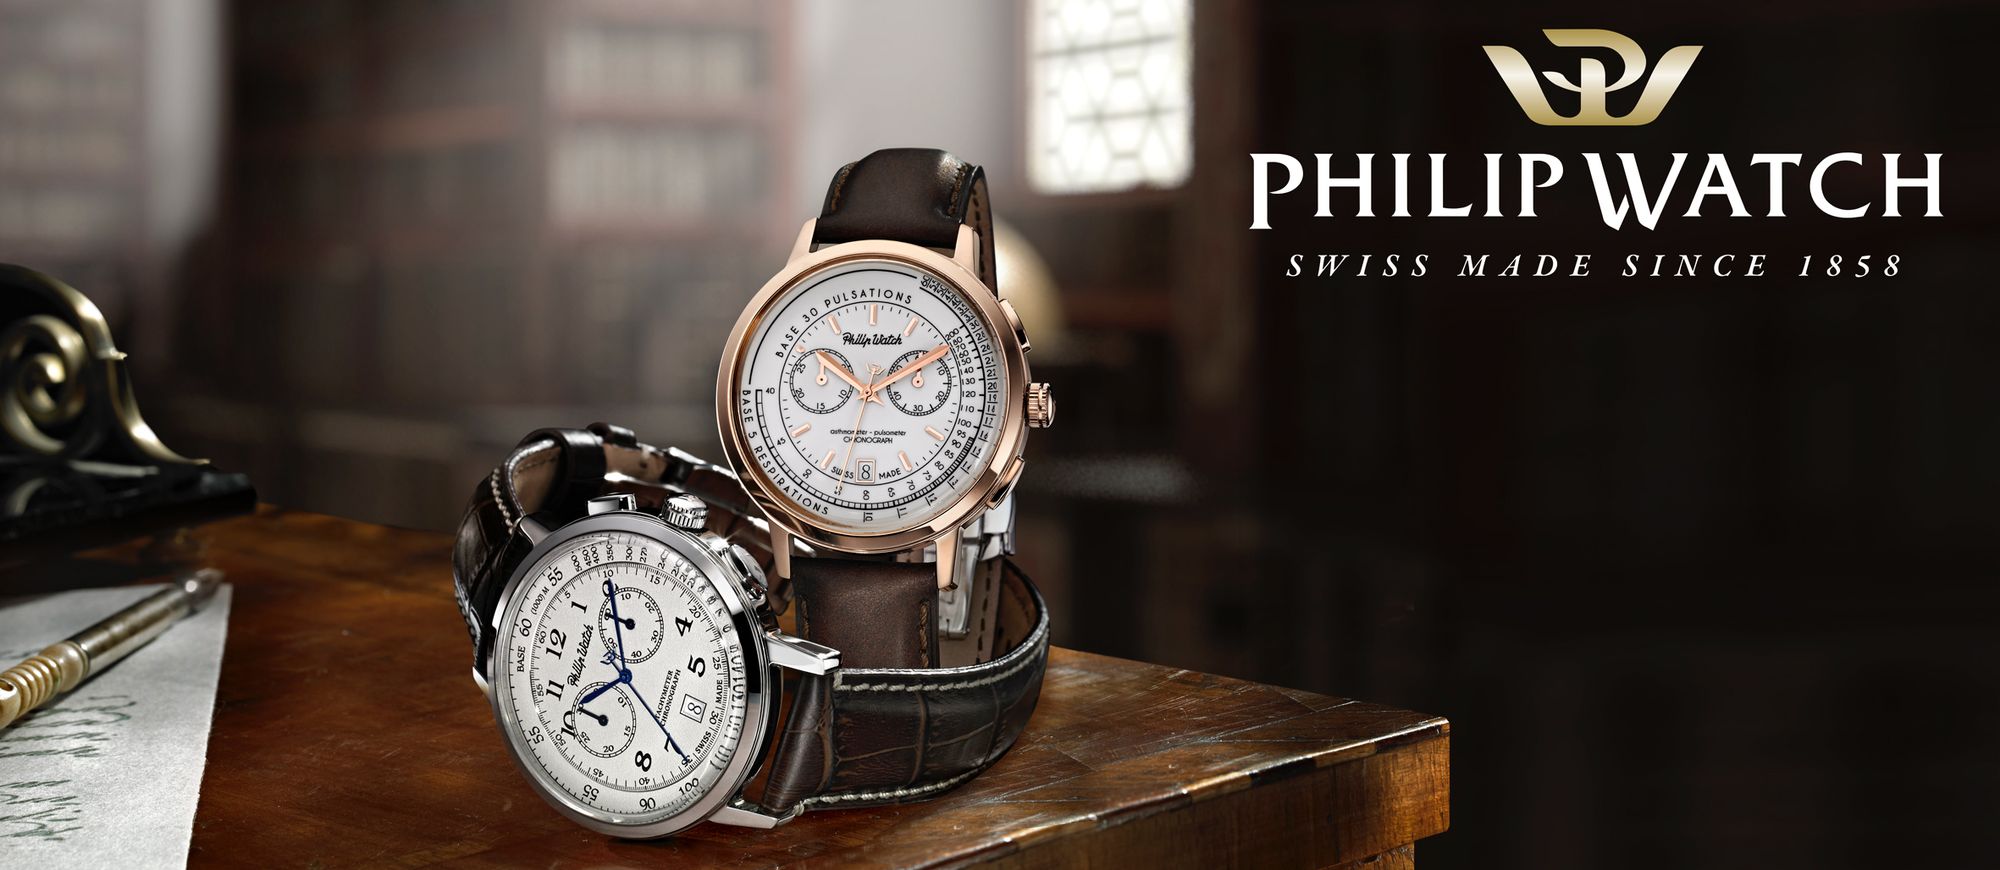 Philip-Watch